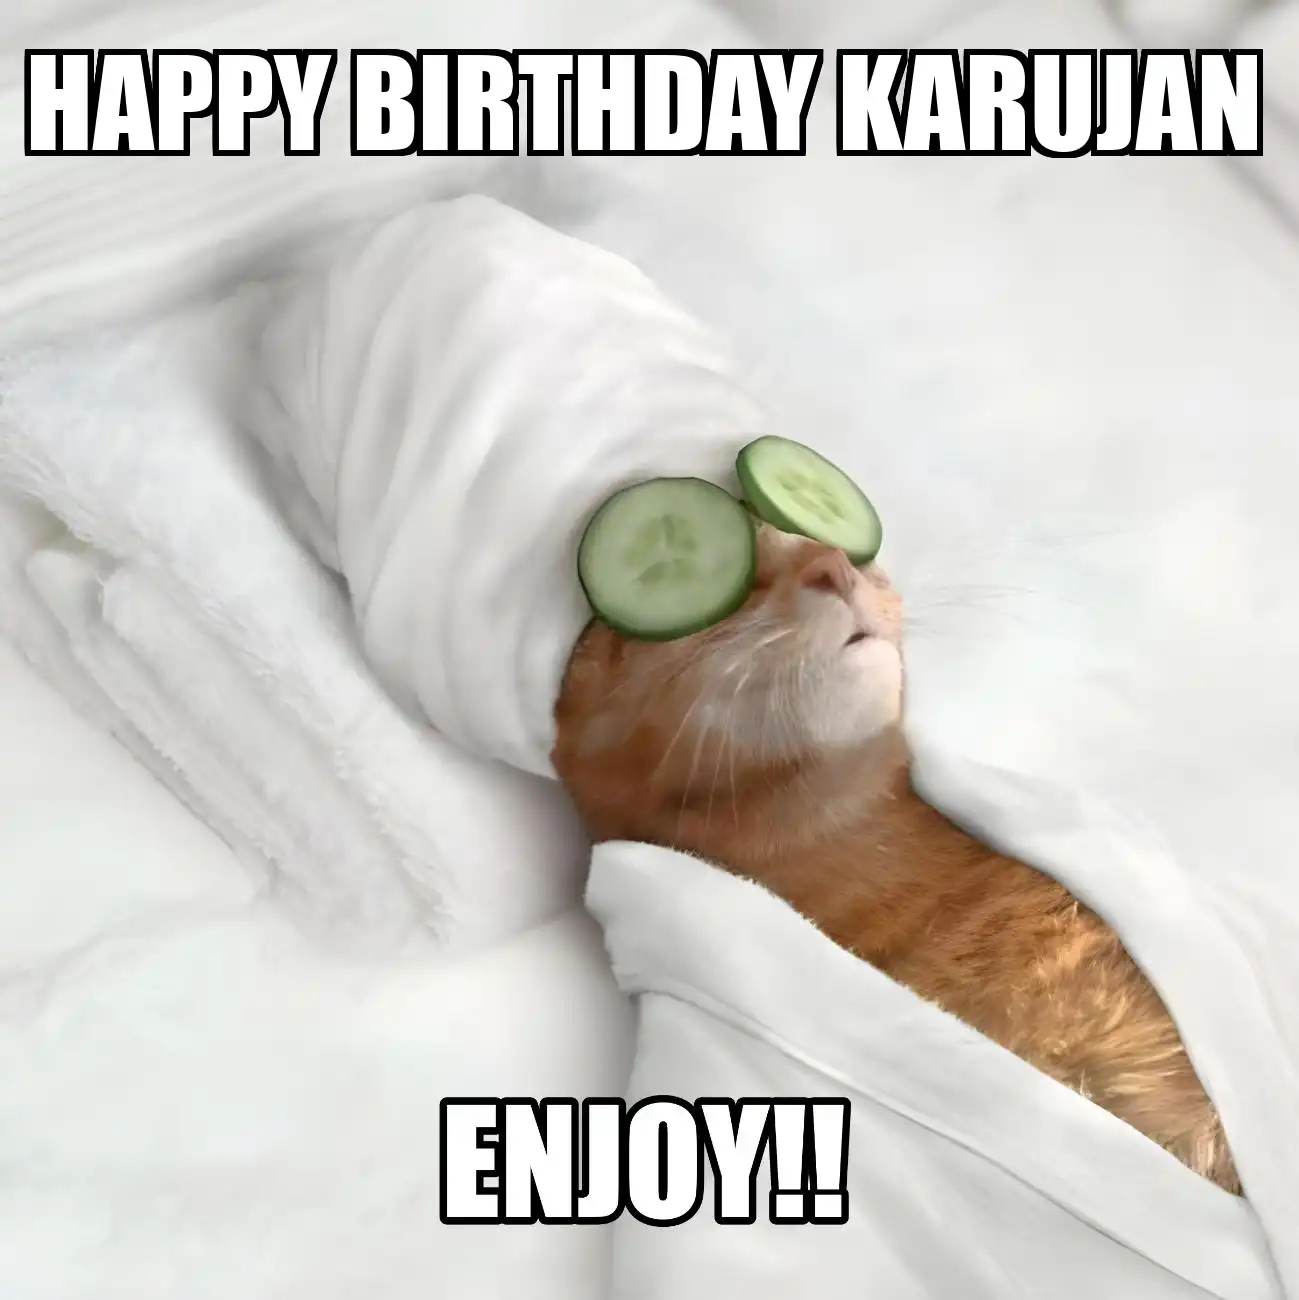 Happy Birthday Karujan Enjoy Cat Meme